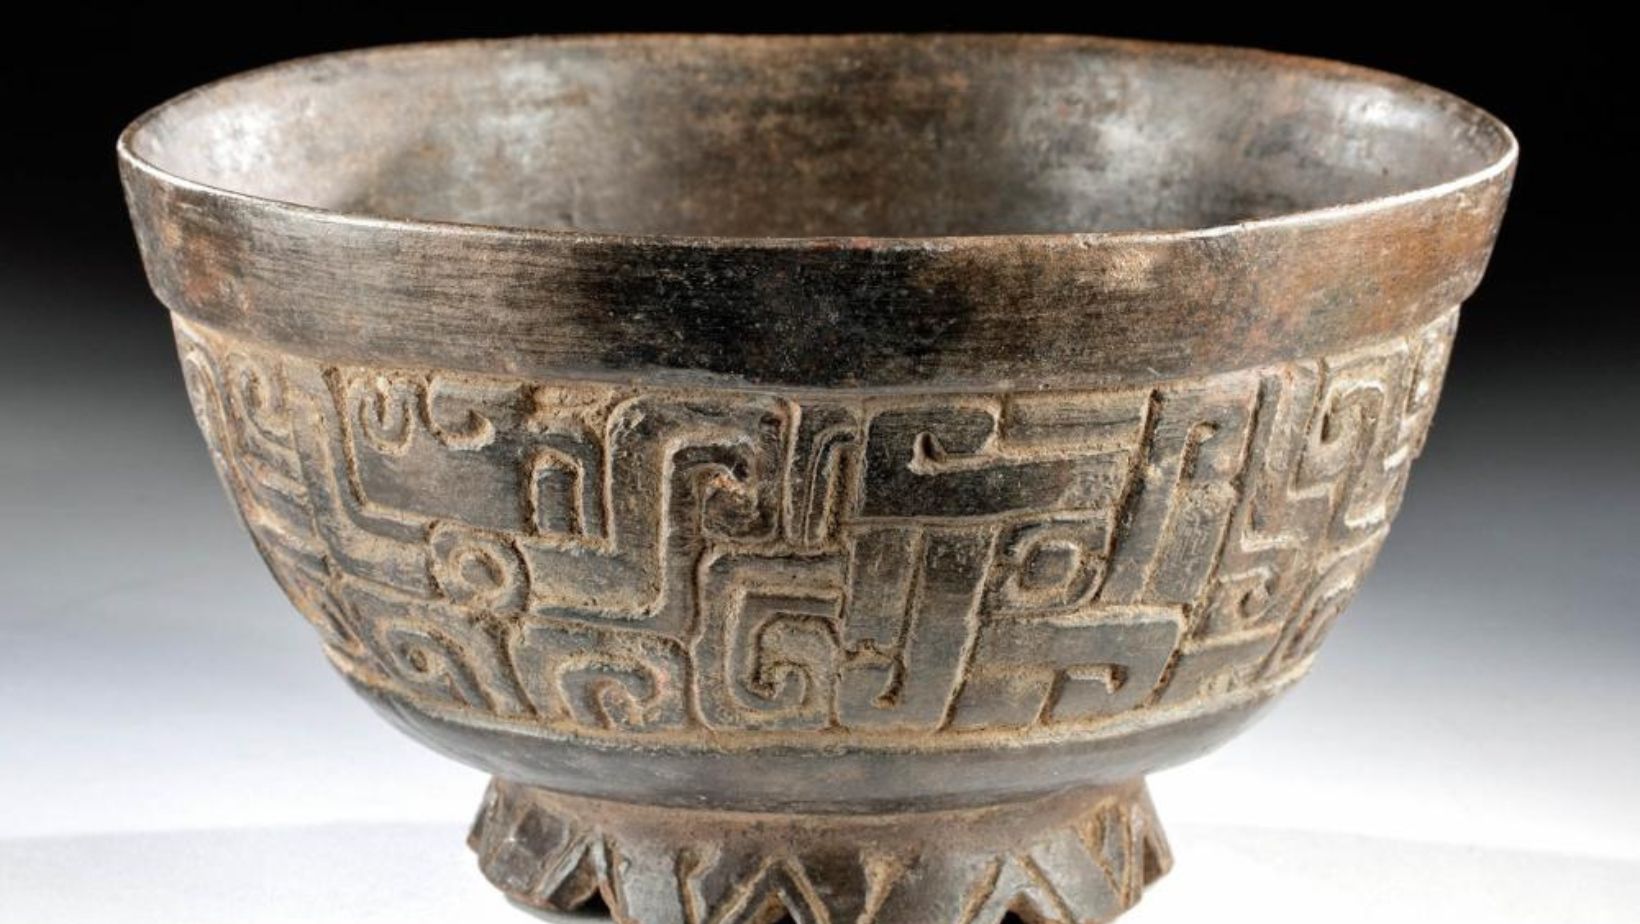 Mayan Ceramics, main features of Mayan art and sculpture